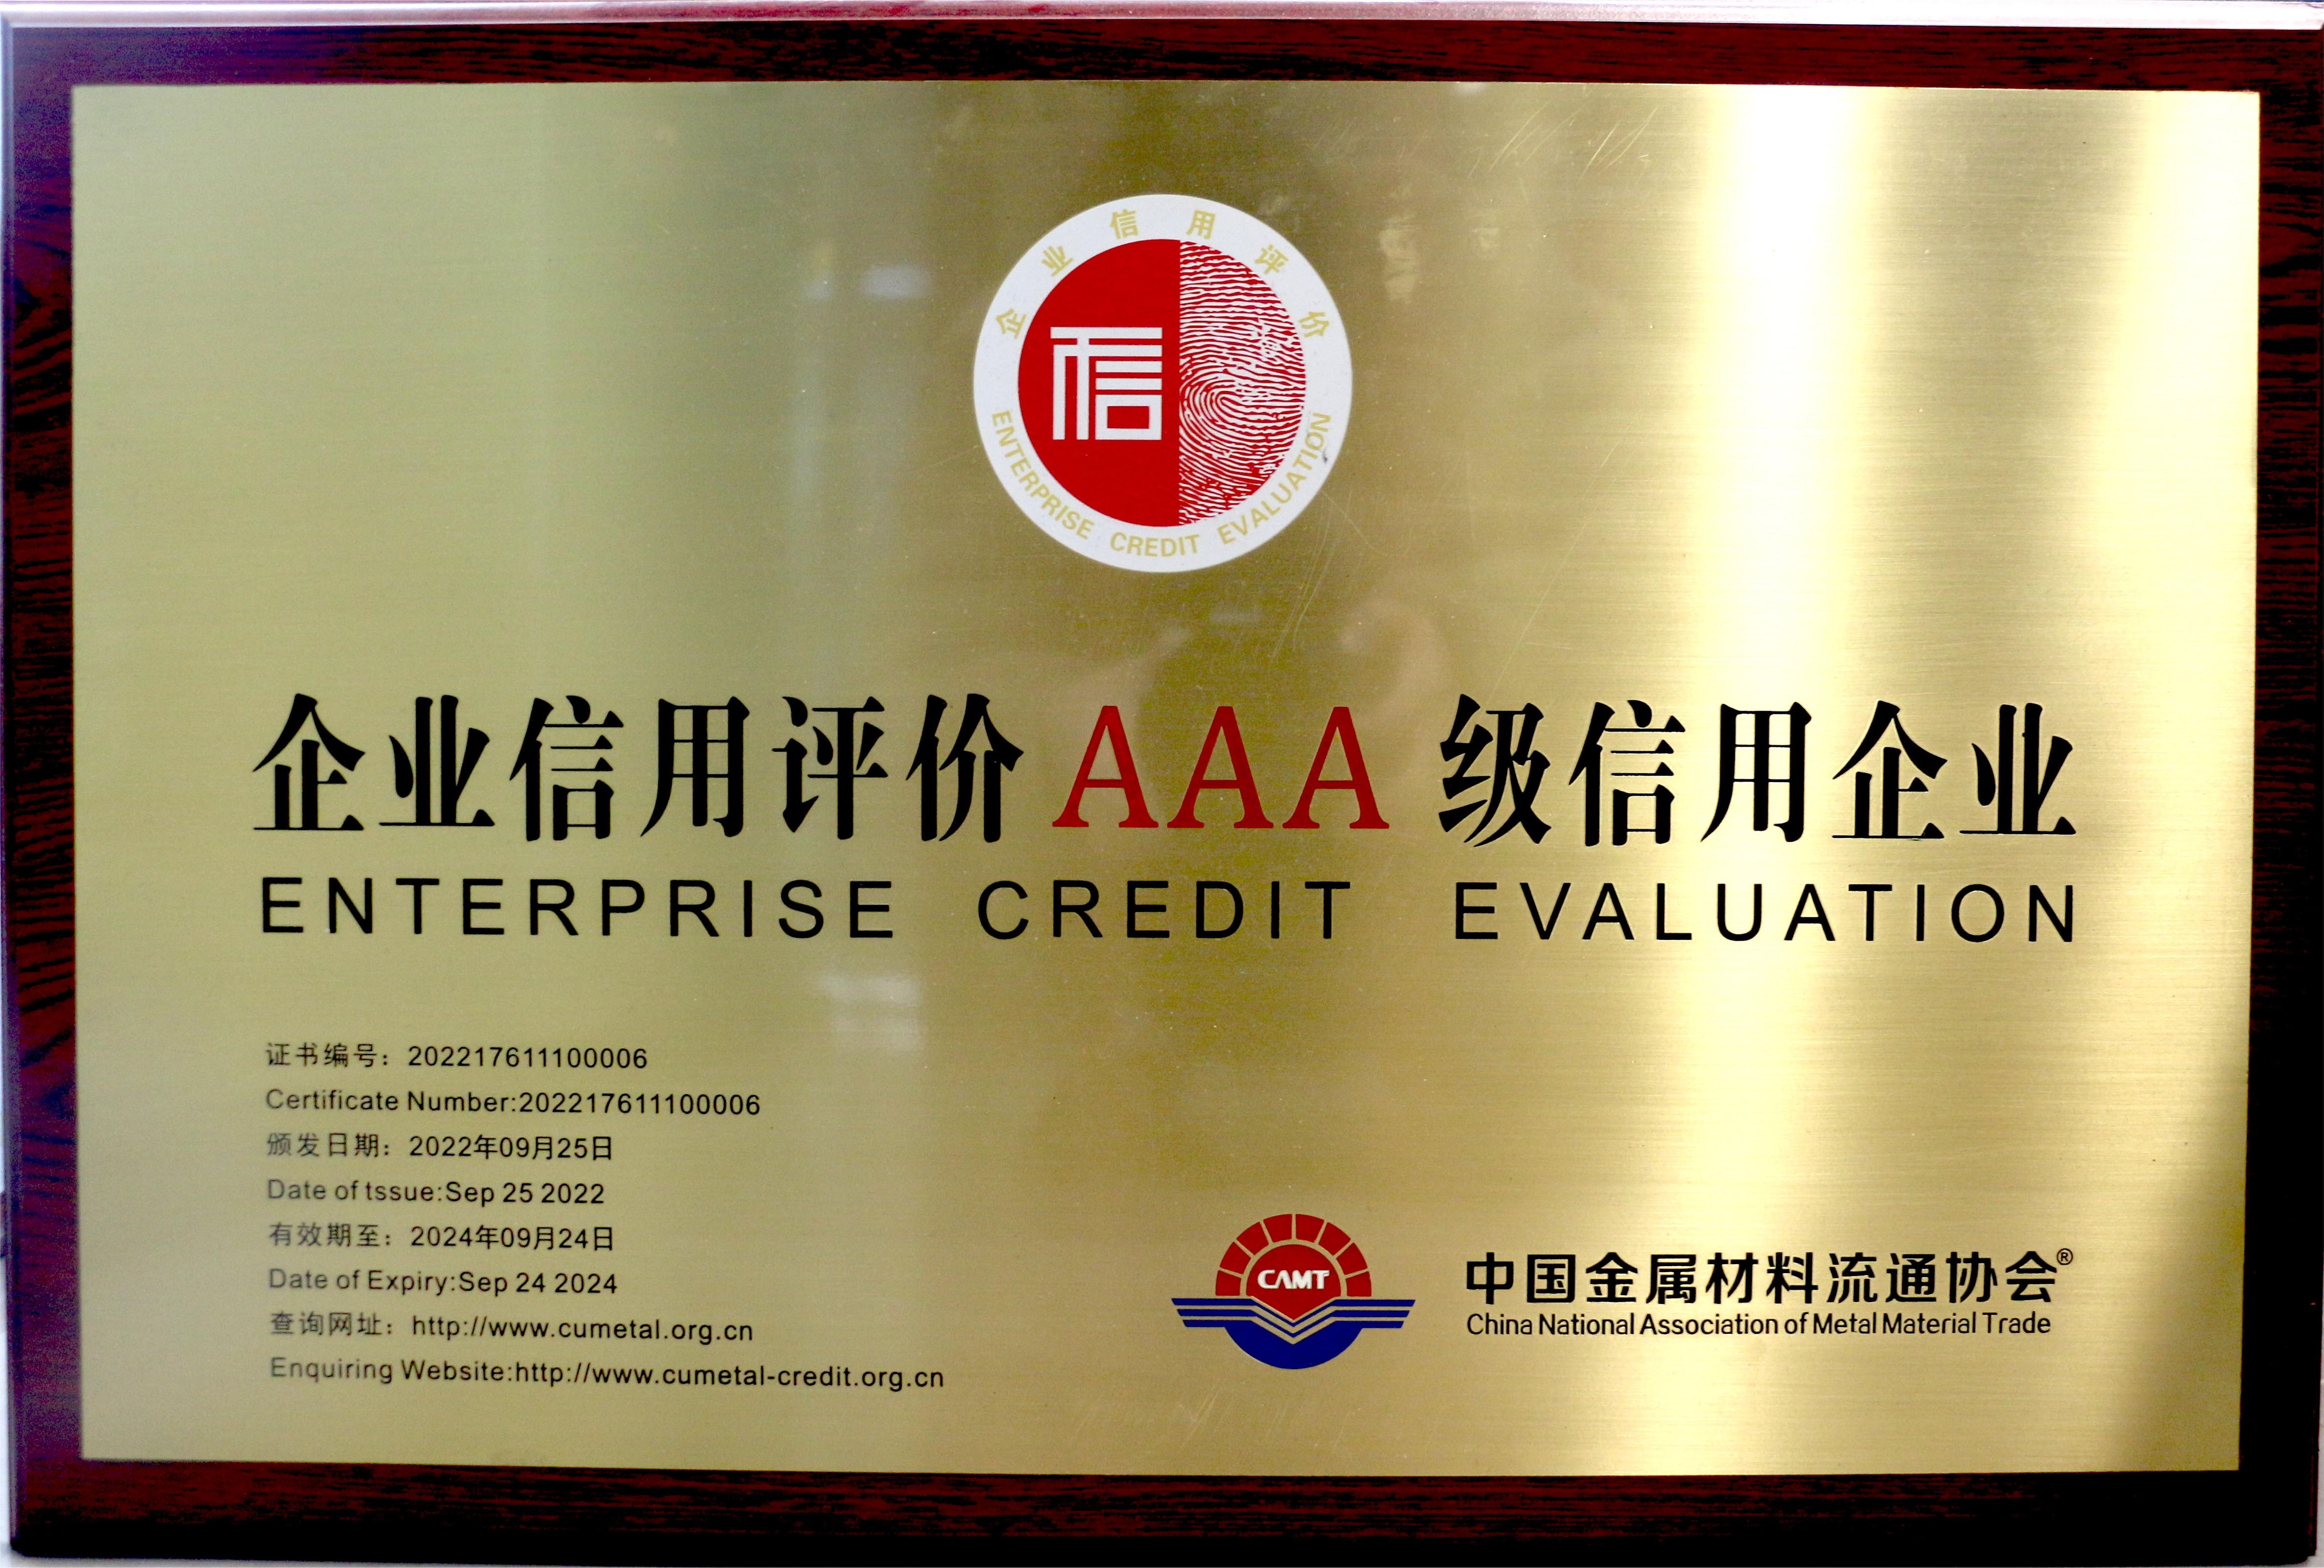 中国金属材料流通协会企业信用评价AAA级信用企业